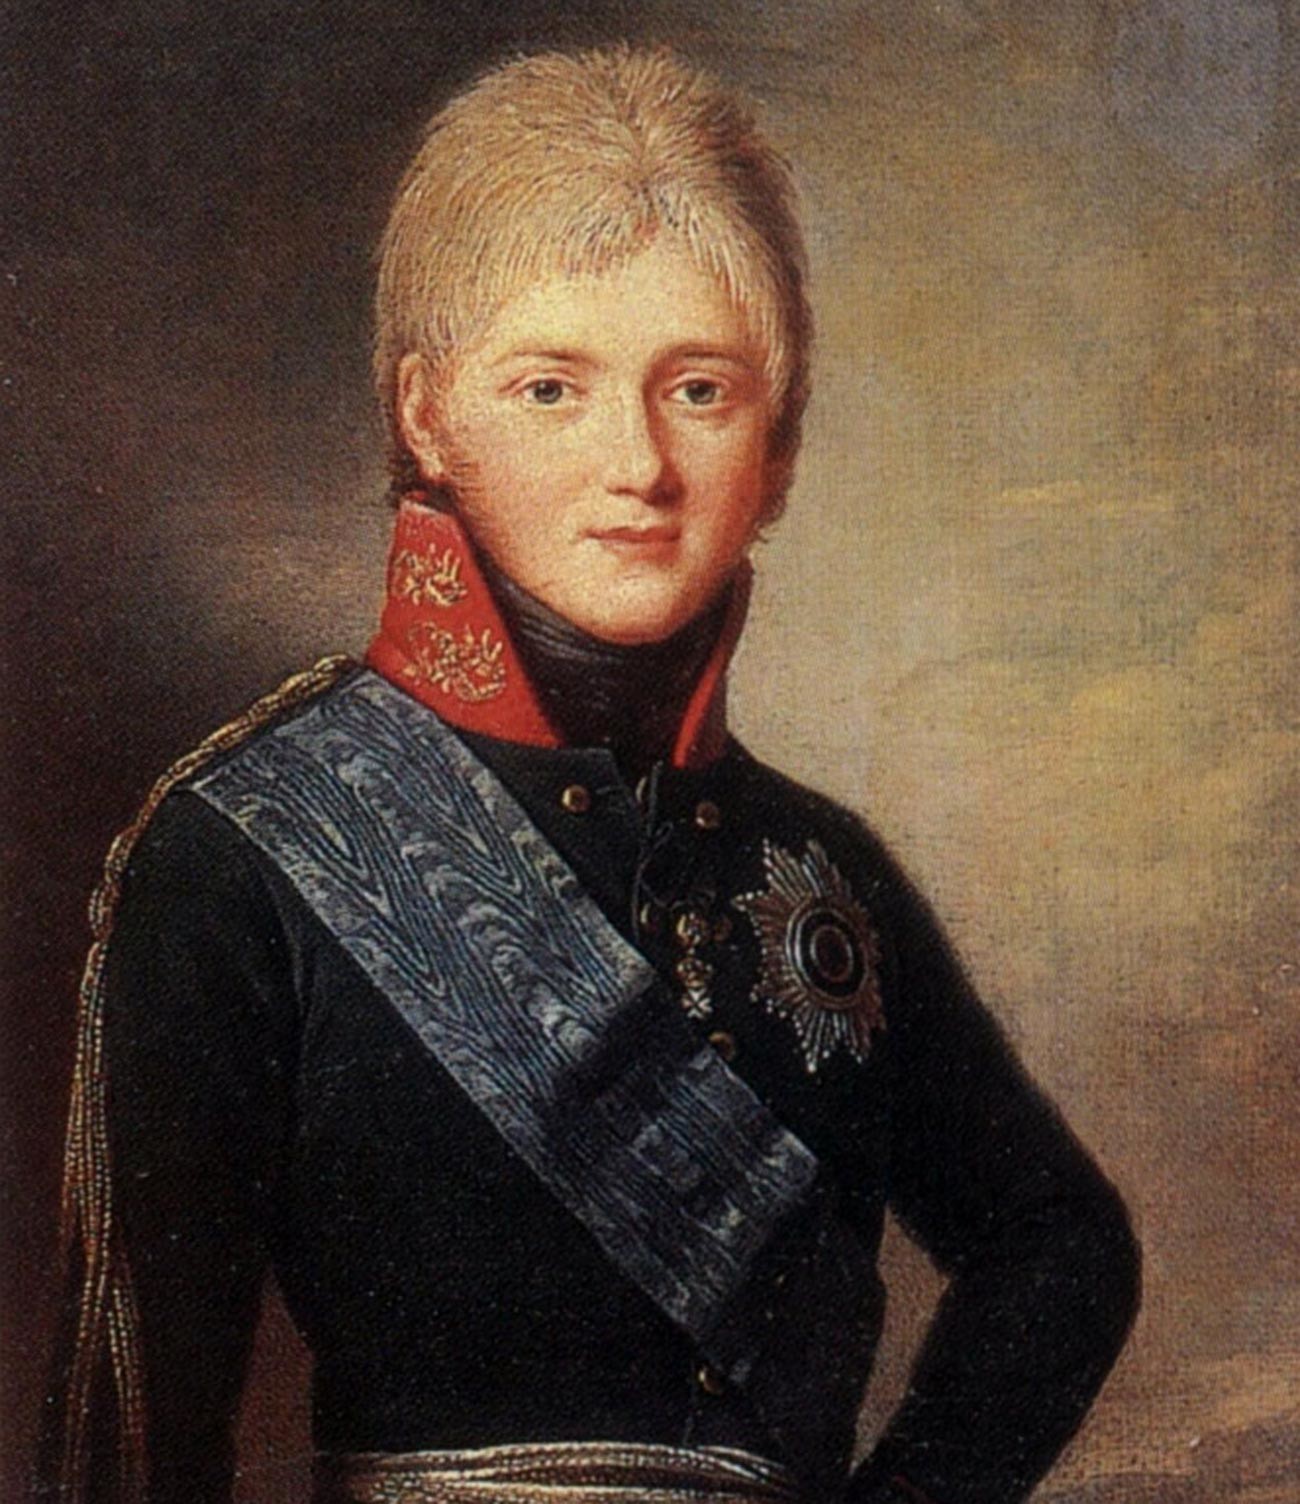 Portret velikog kneza Aleksandra Pavloviča, budućeg cara Aleksandra I.
